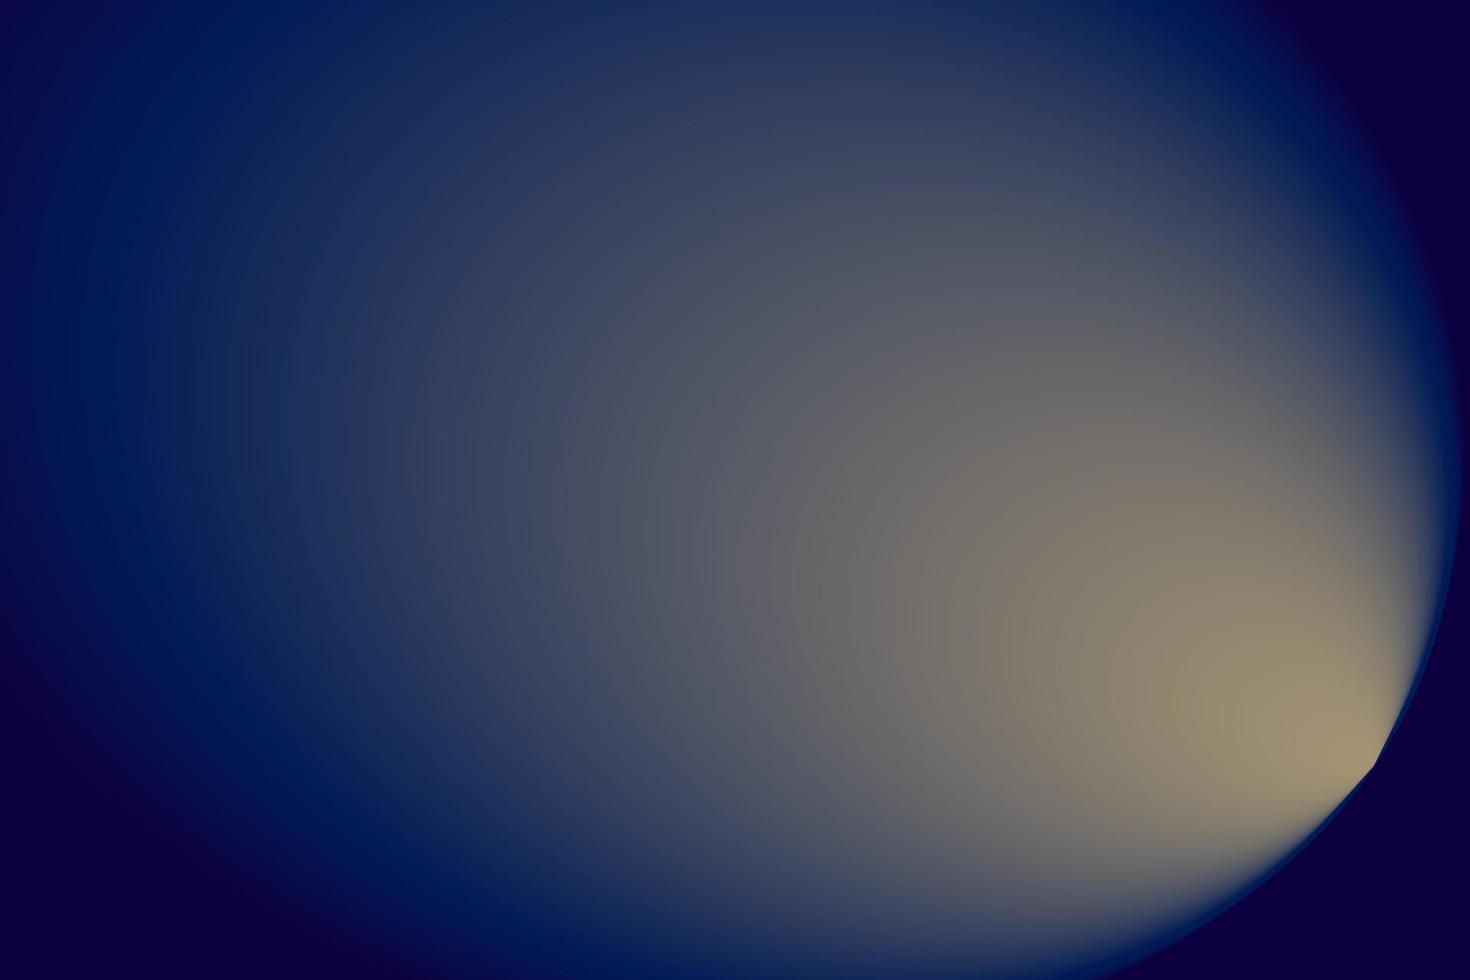 Taschenlampen-Hintergrunddesign mit blauem Licht vektor